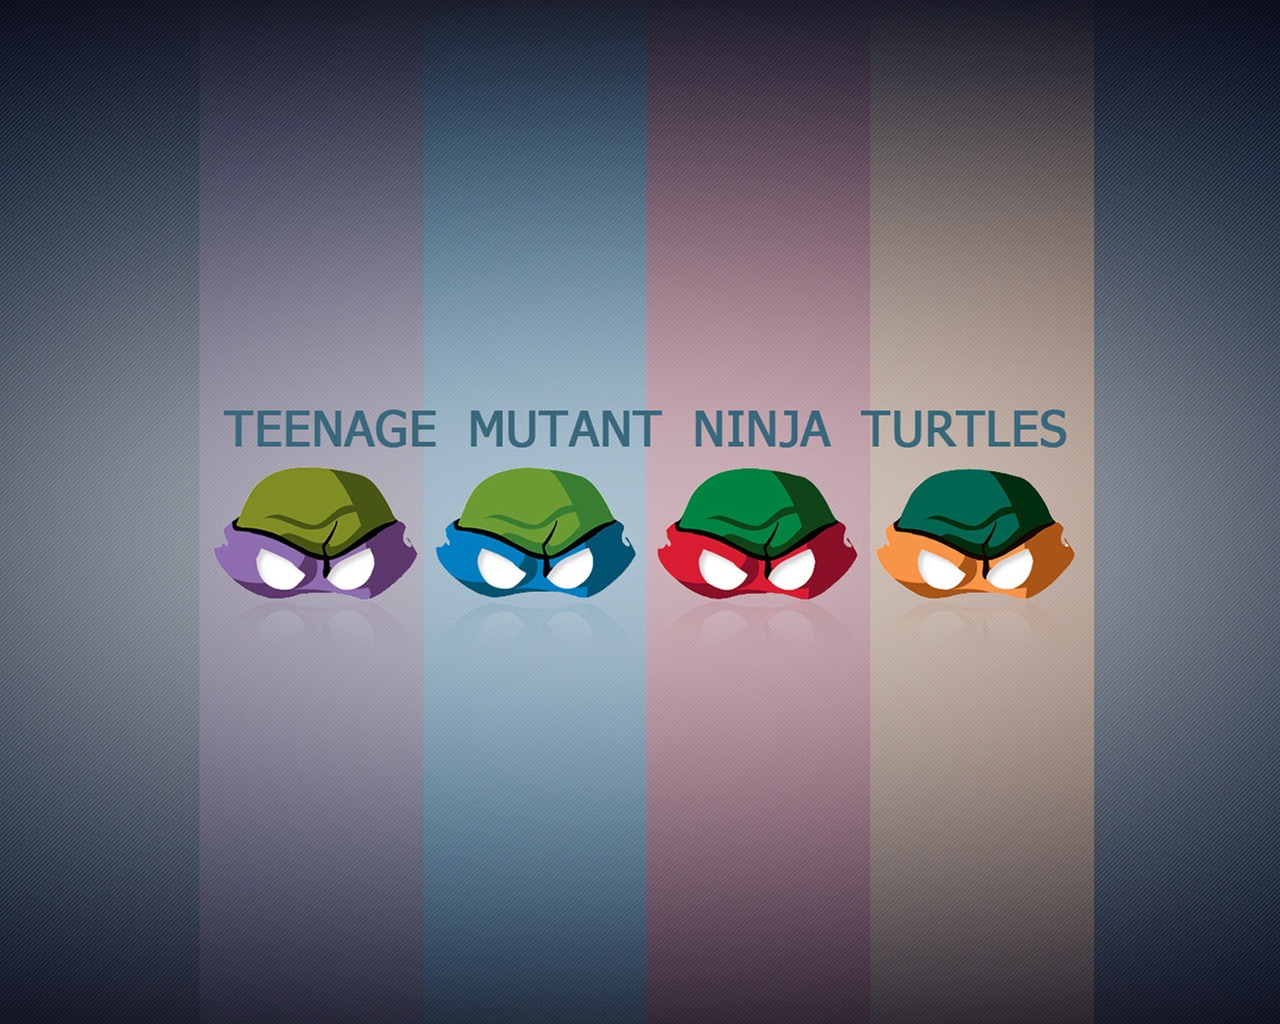 Teengae Mutant Ninja Turtles for 1280 x 1024 resolution